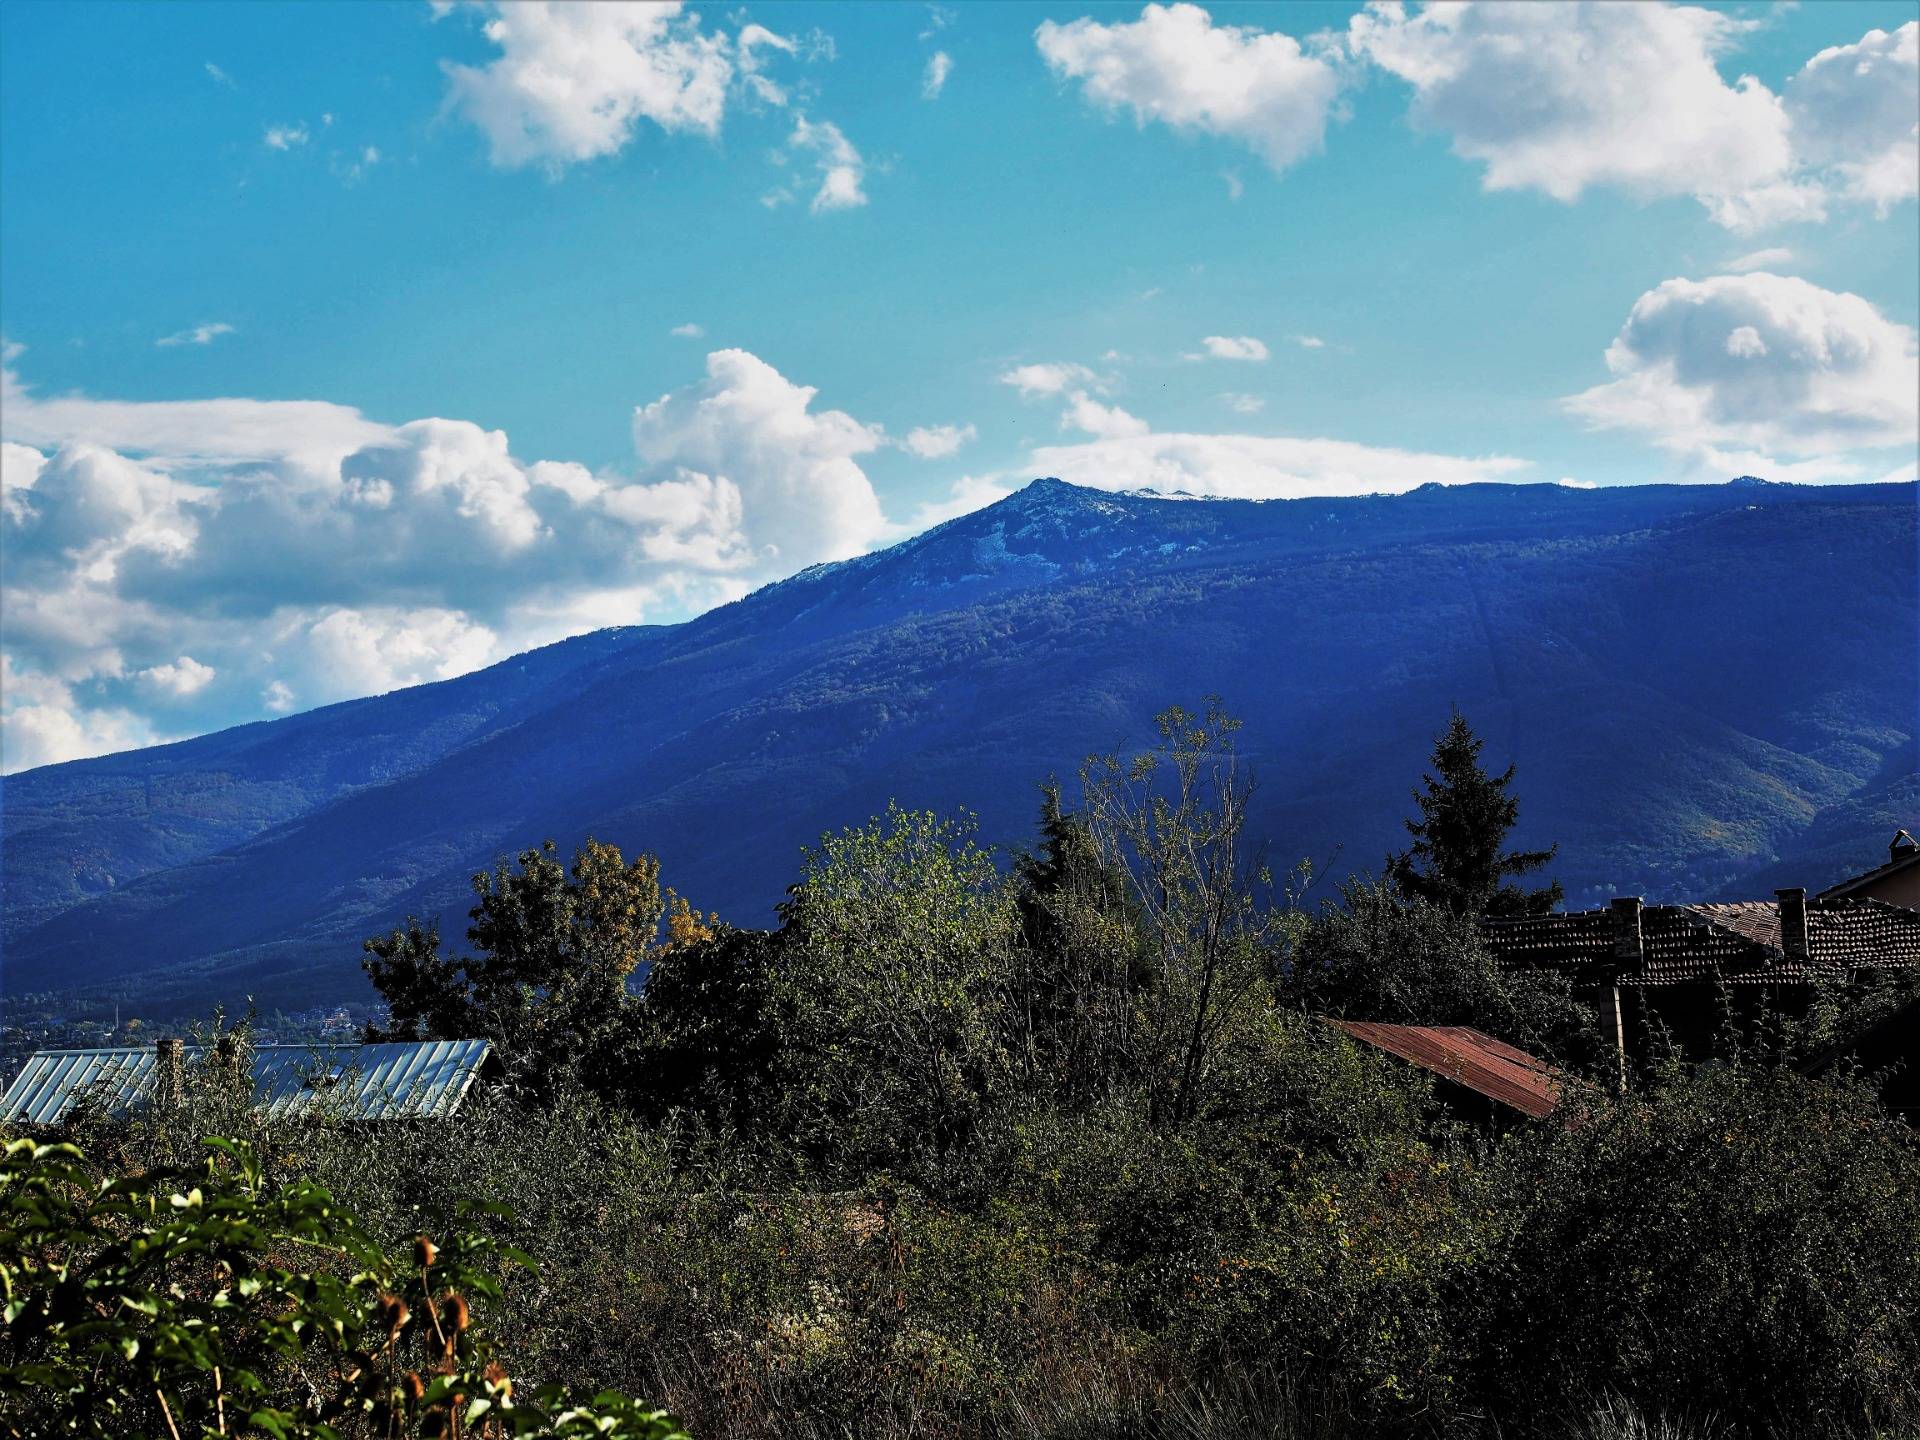 View of Vitosha Mountain